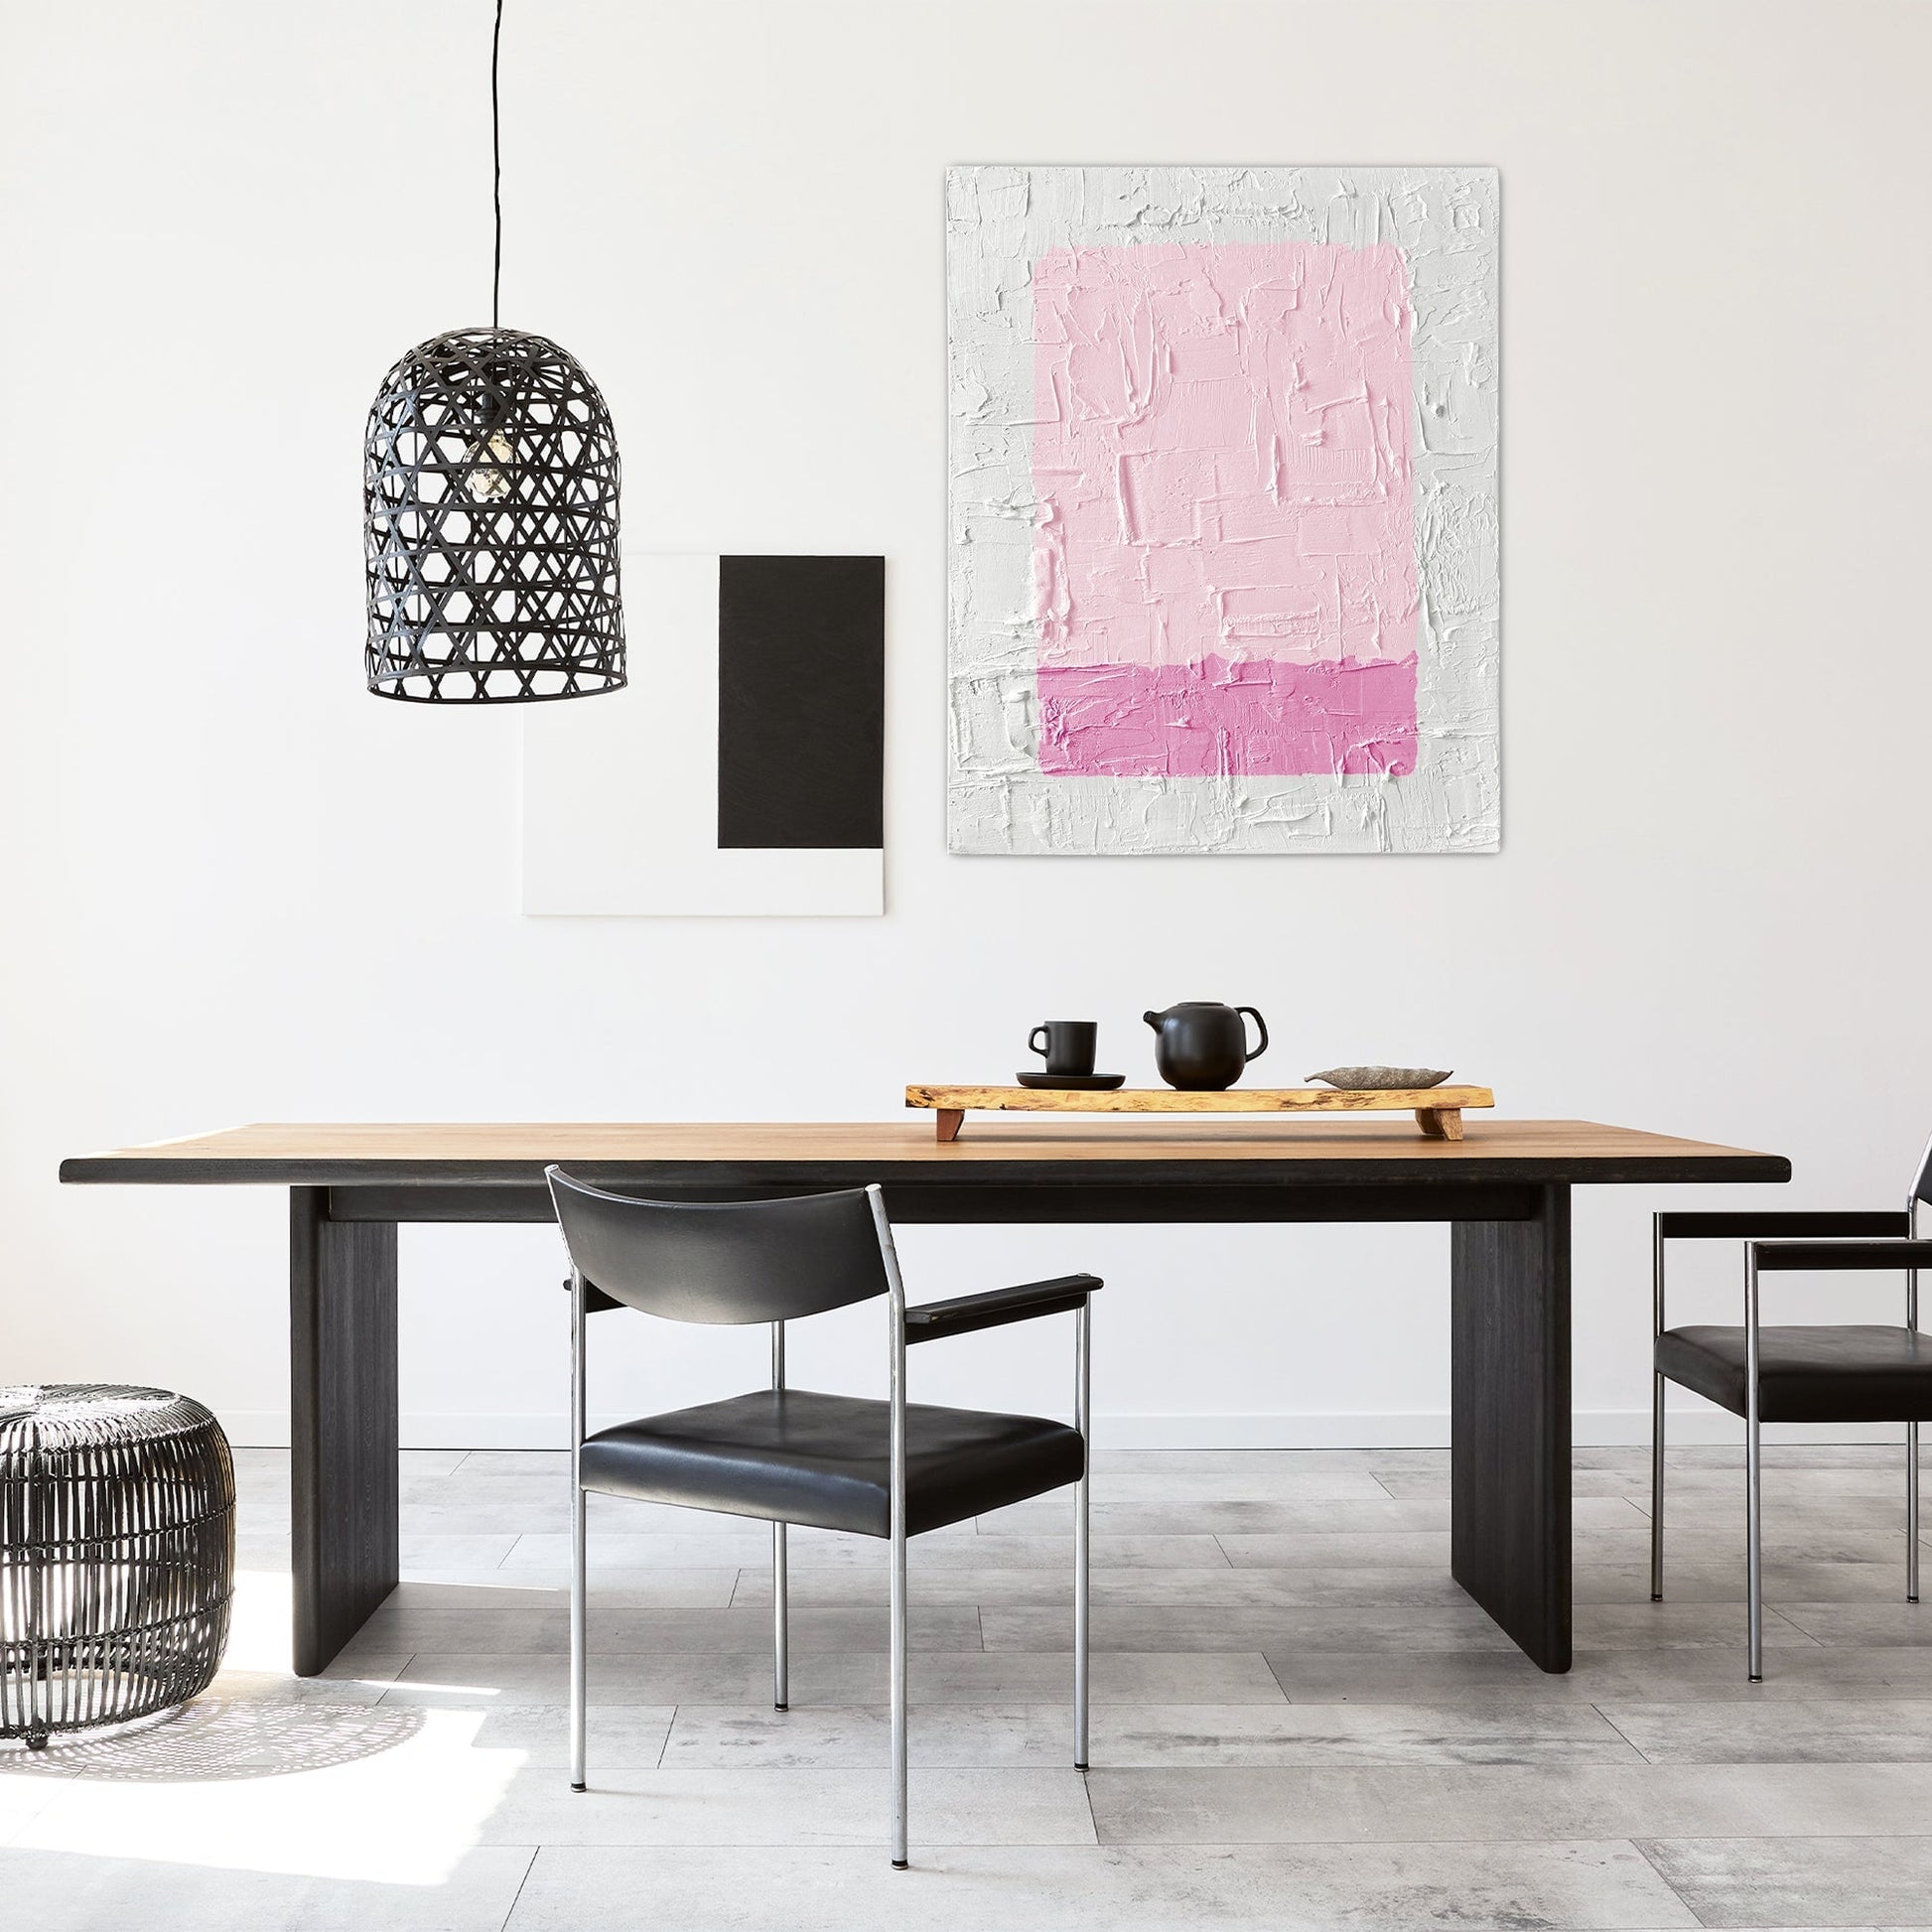 Abstract Pink + White Textured Art TEXTURED ART LULUSIMONSTUDIO 